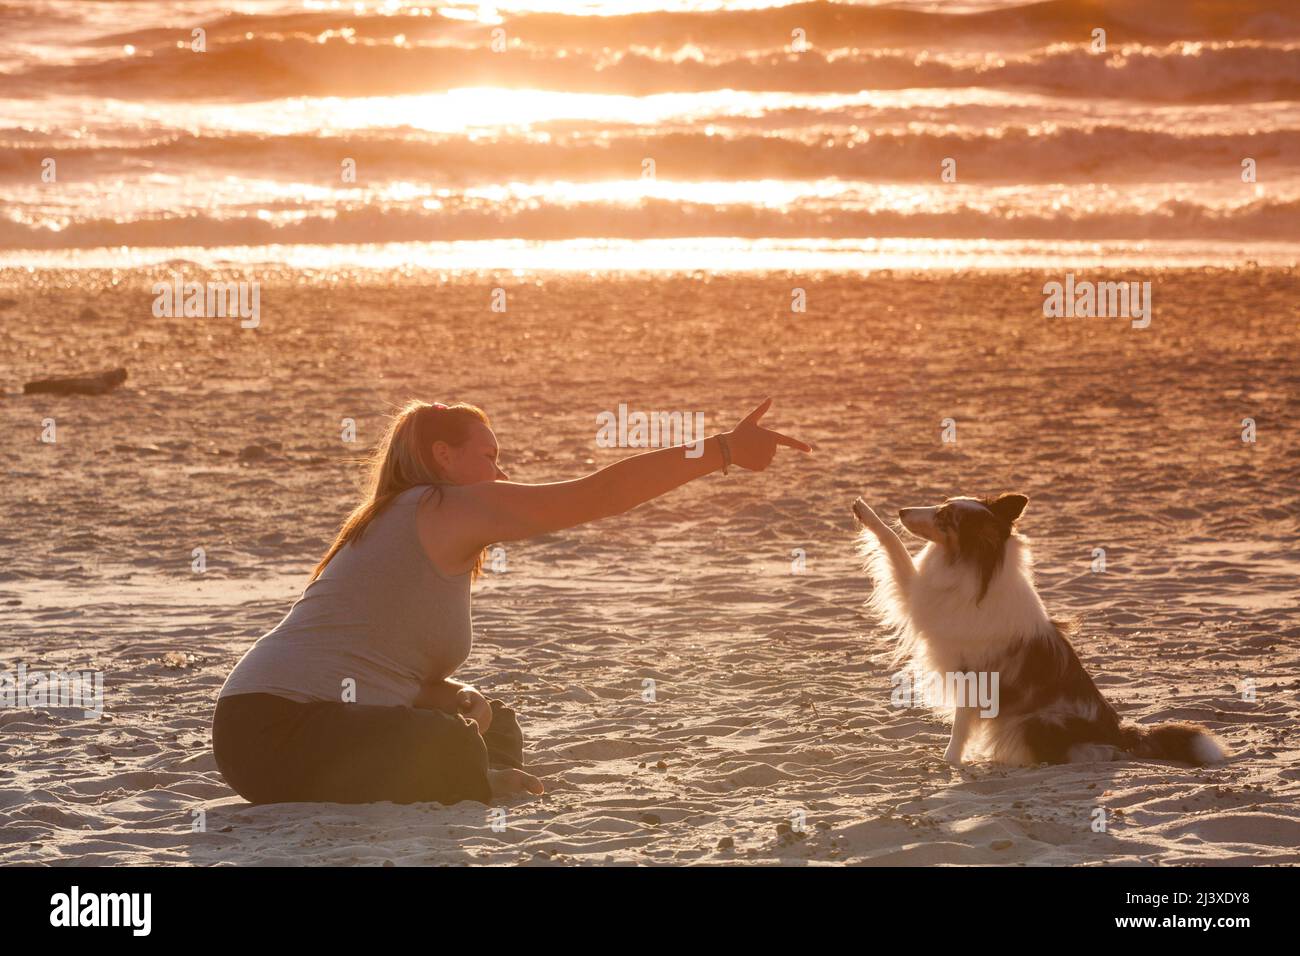 Mensch und Hund am Strand Stock Photo